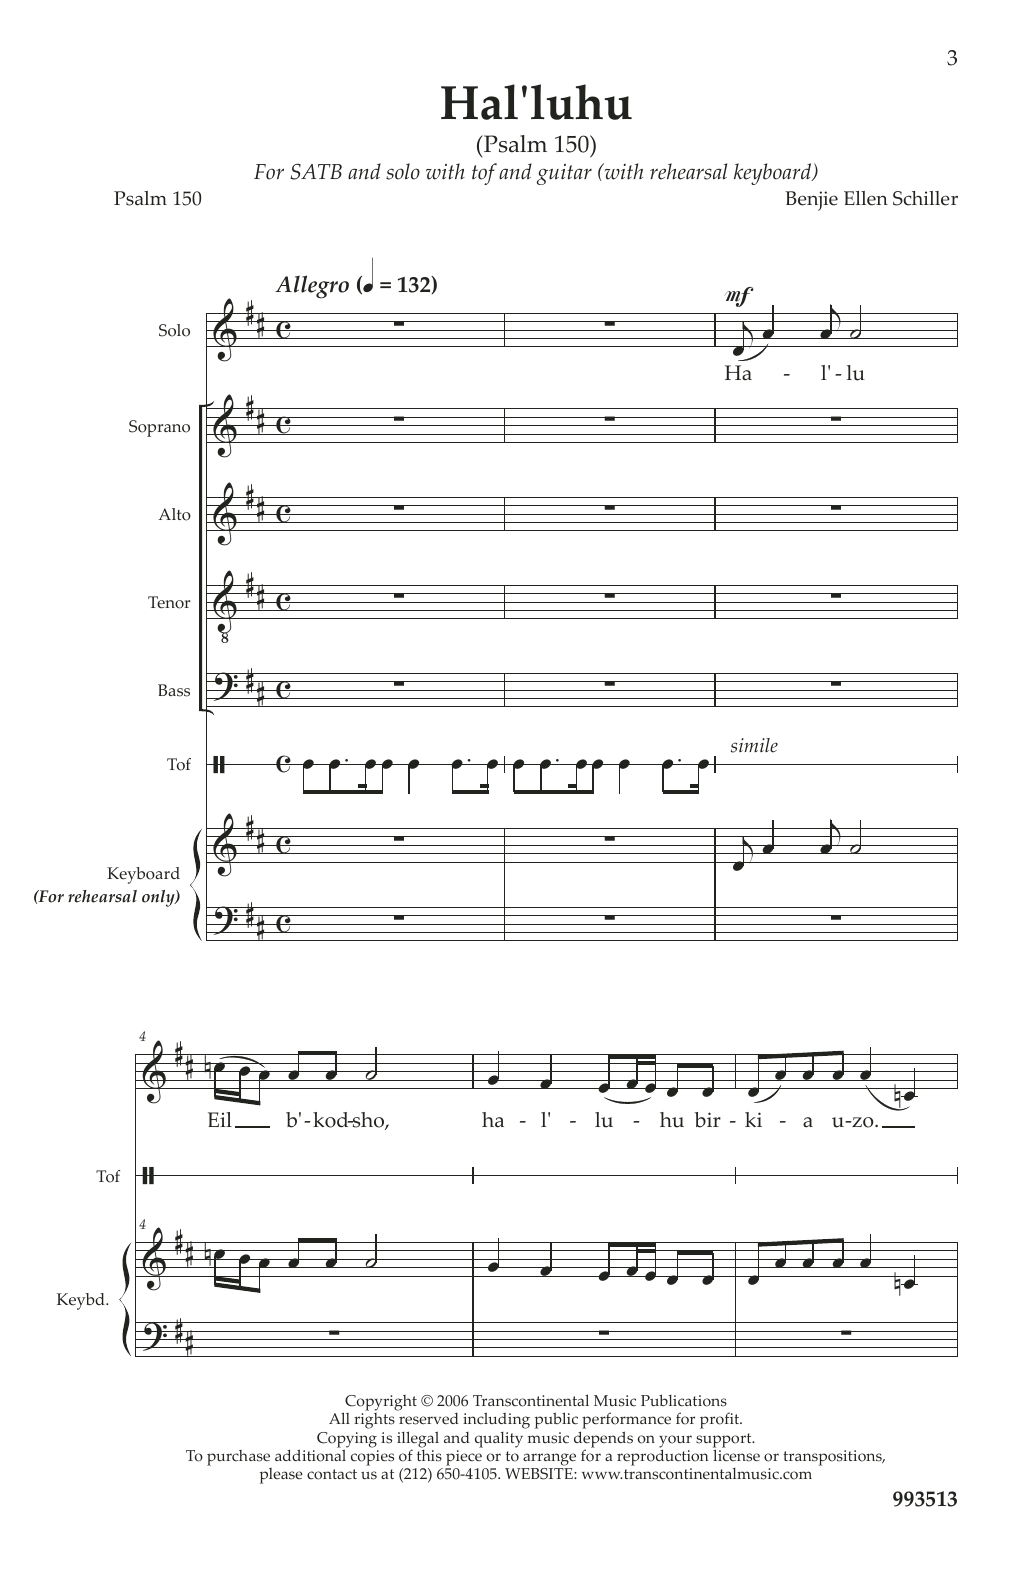 Benjie-Ellen Schiller Hal'luhu (Psalm 150) sheet music notes and chords arranged for SATB Choir